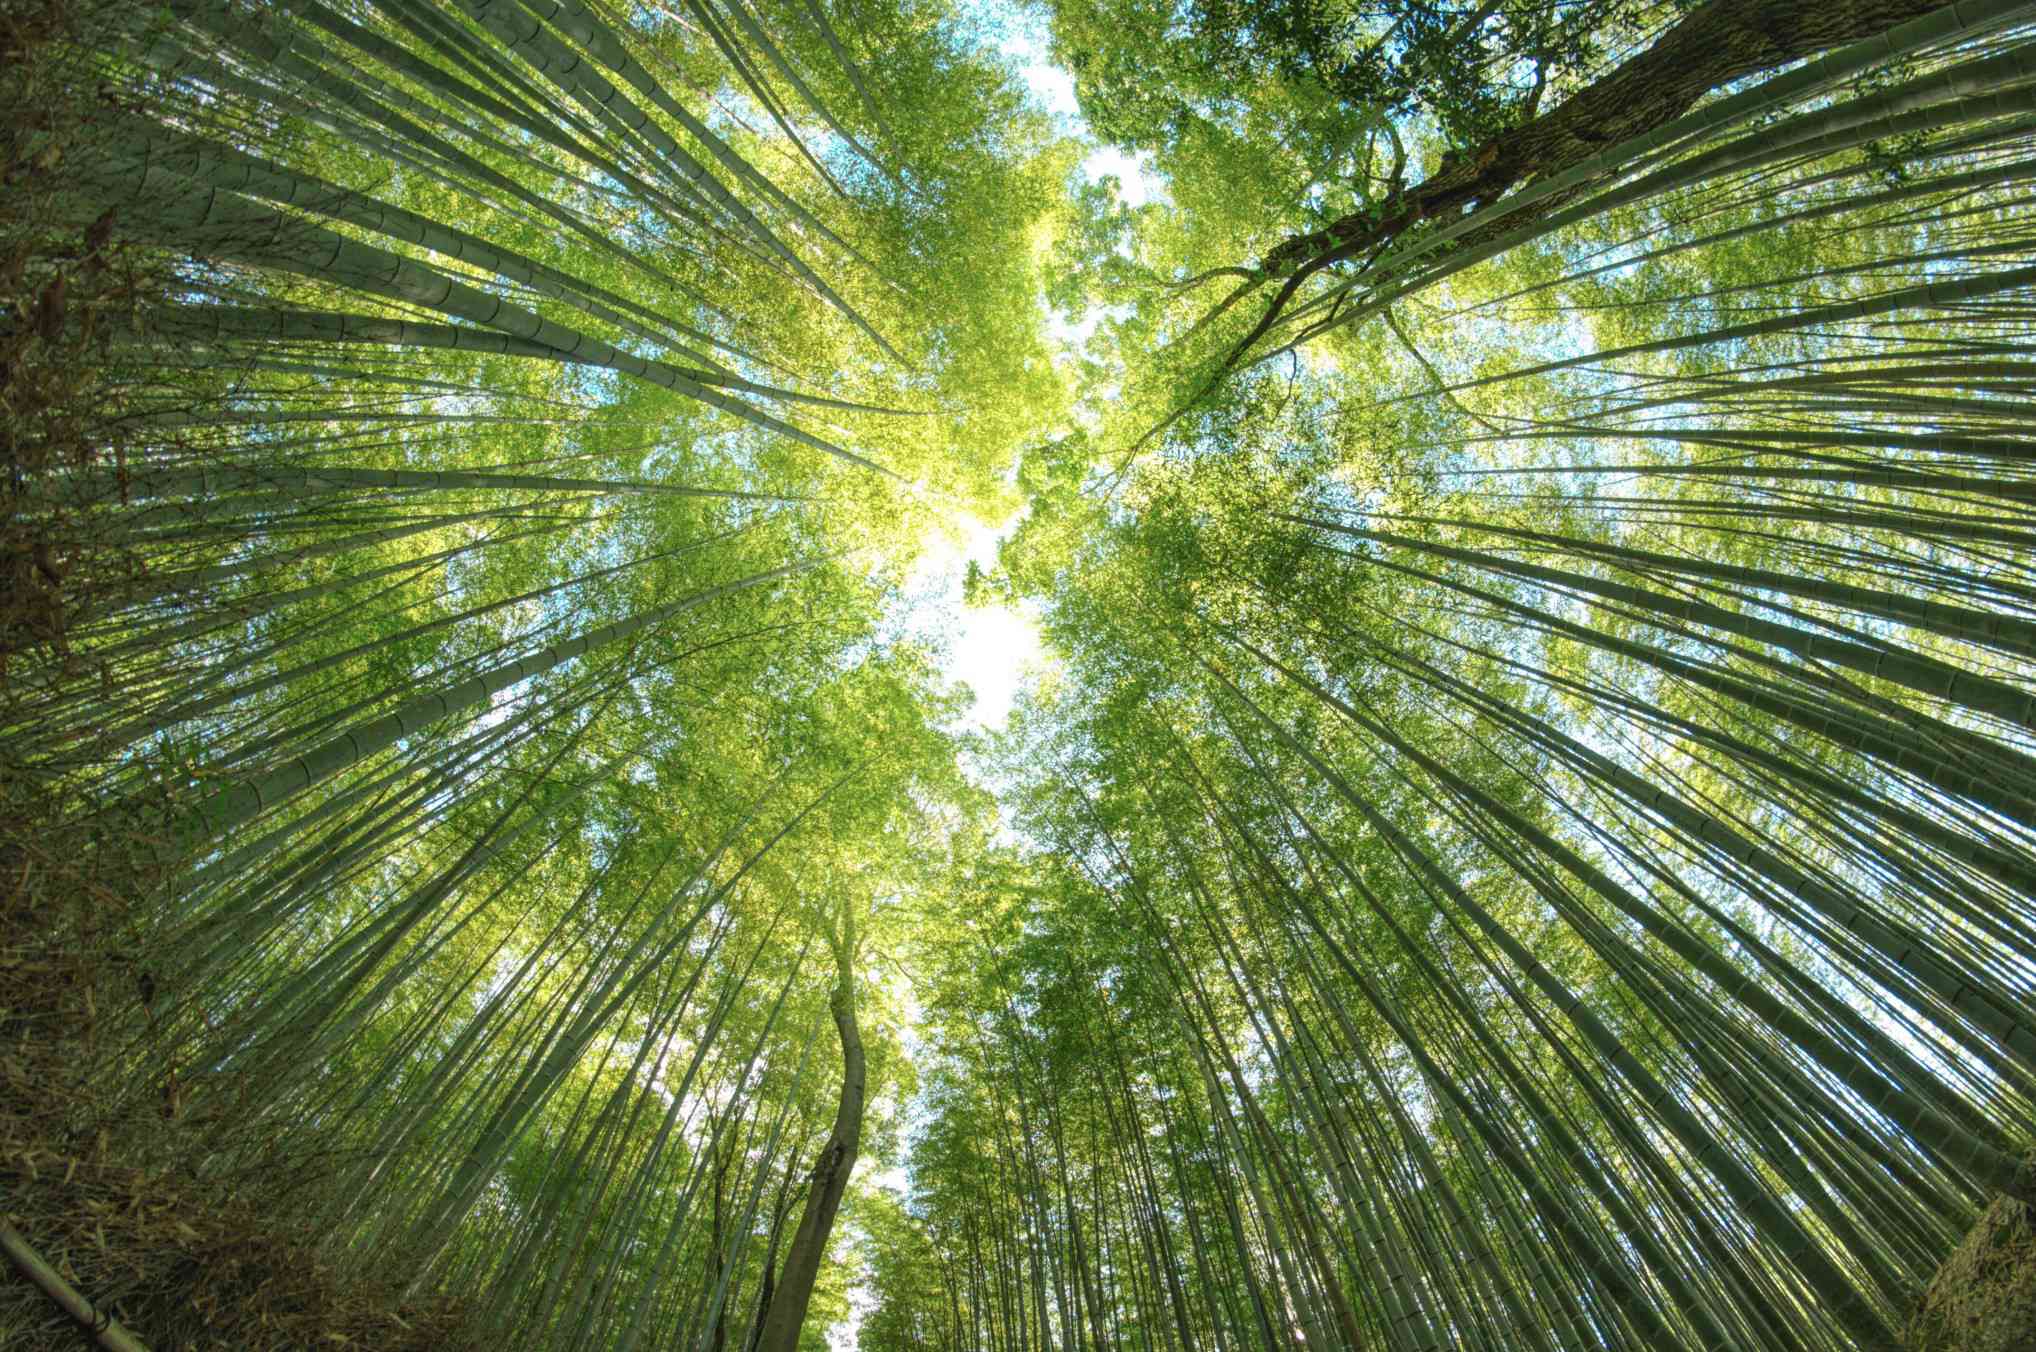 Bambusový les vyfotografovaný při pohledu přímo přes objektiv s rybím okem.